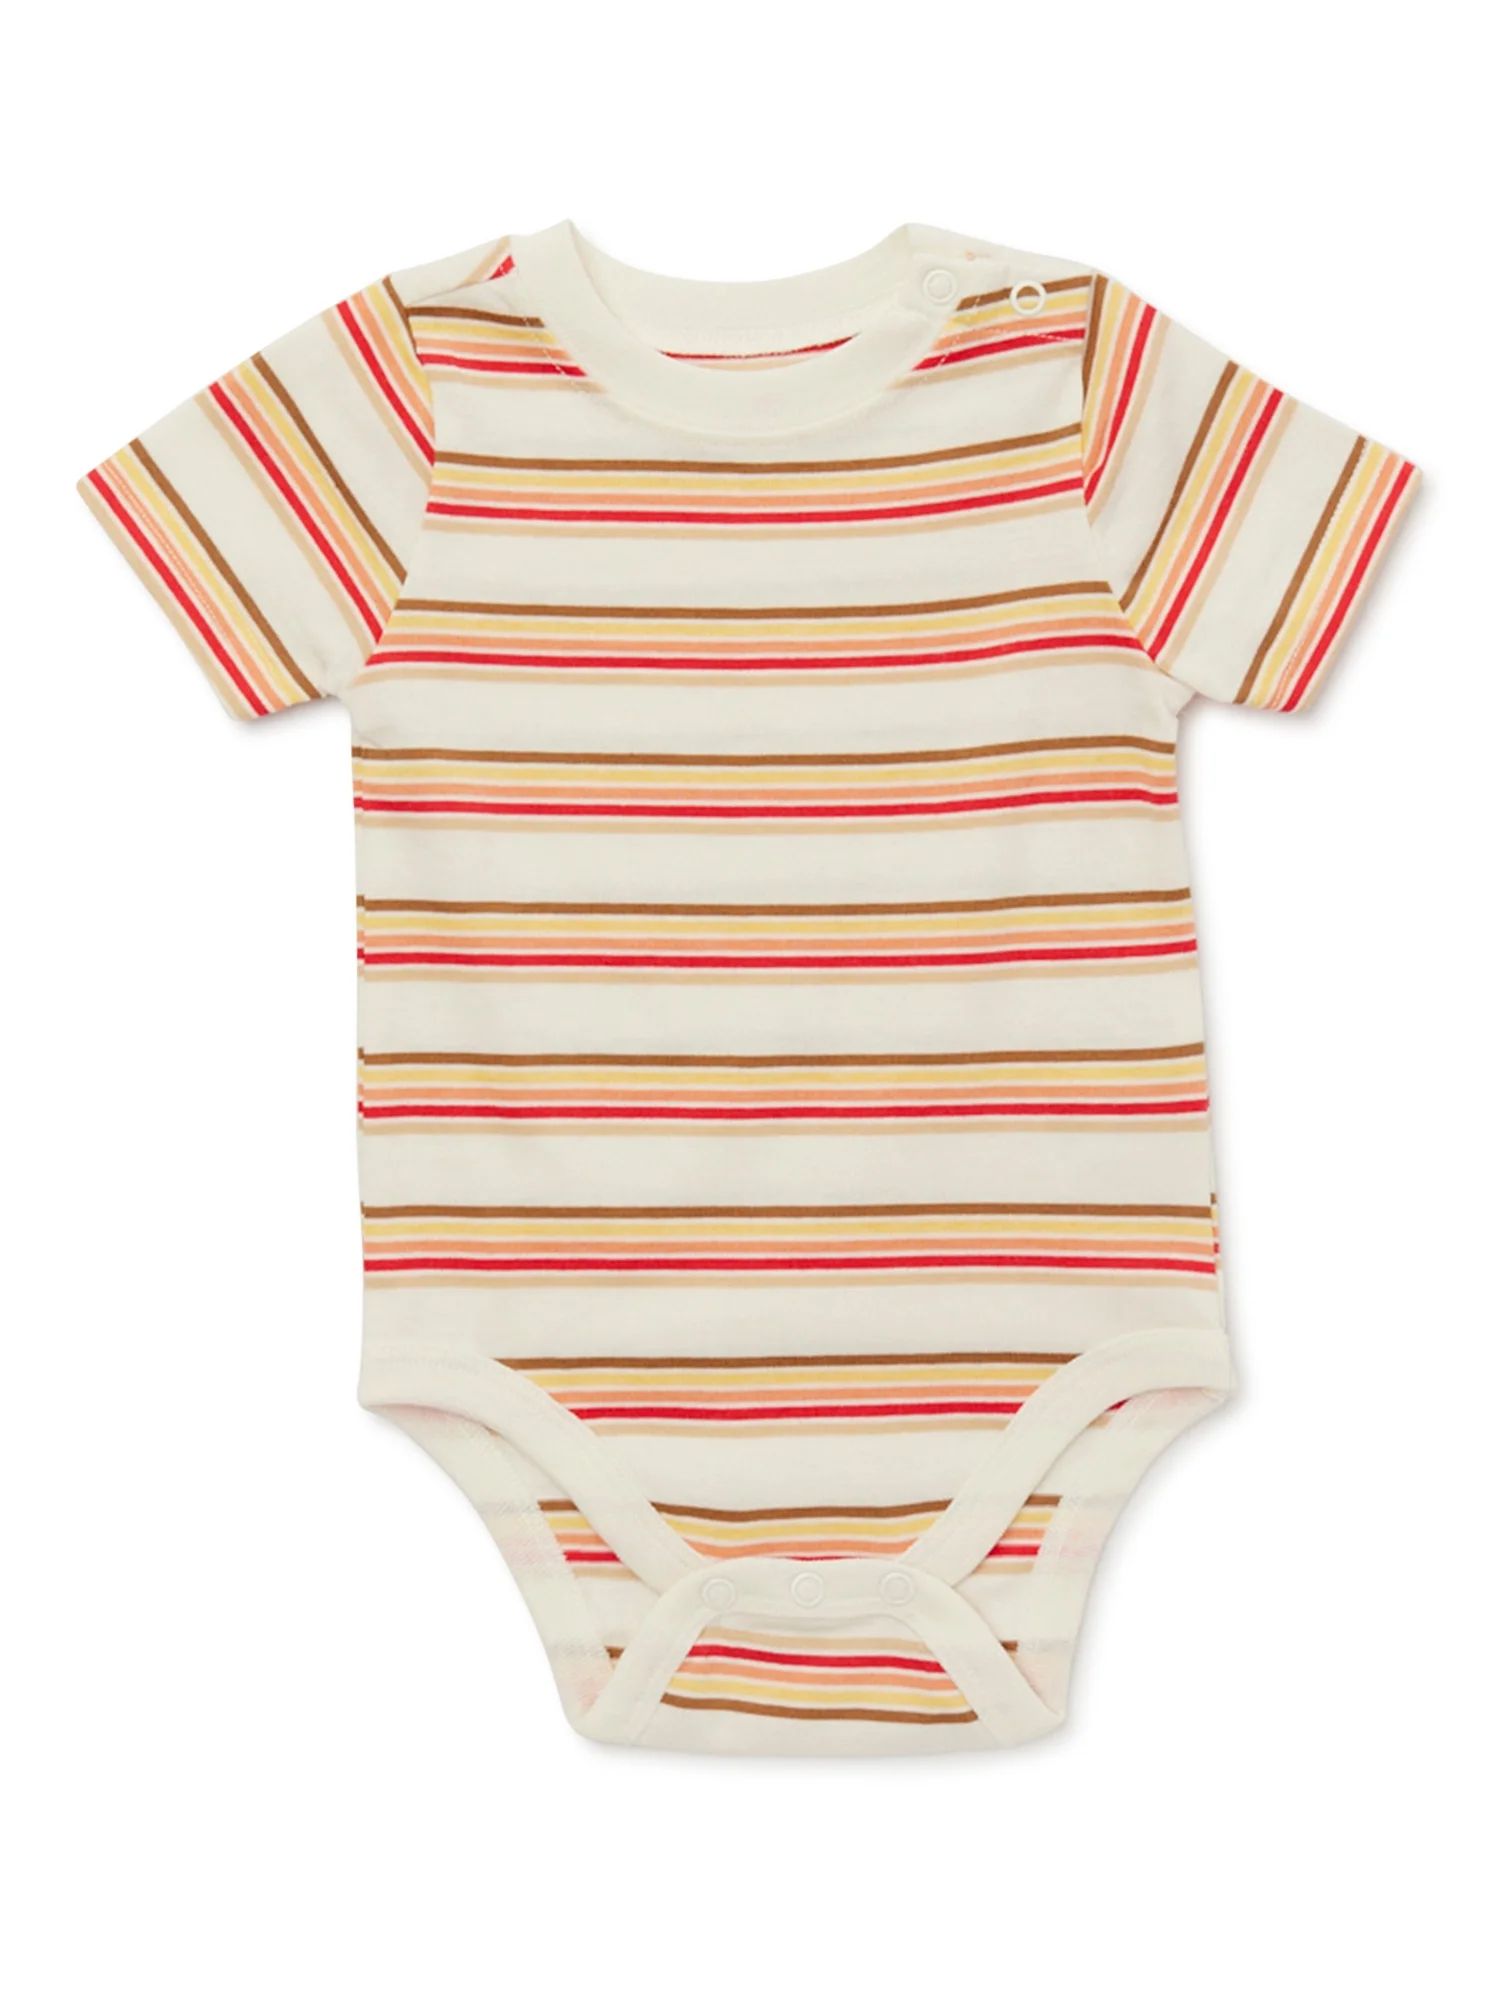 Garanimals Baby Boys Short Sleeve Stripe Bodysuit, Sizes 0-24 Months | Walmart (US)